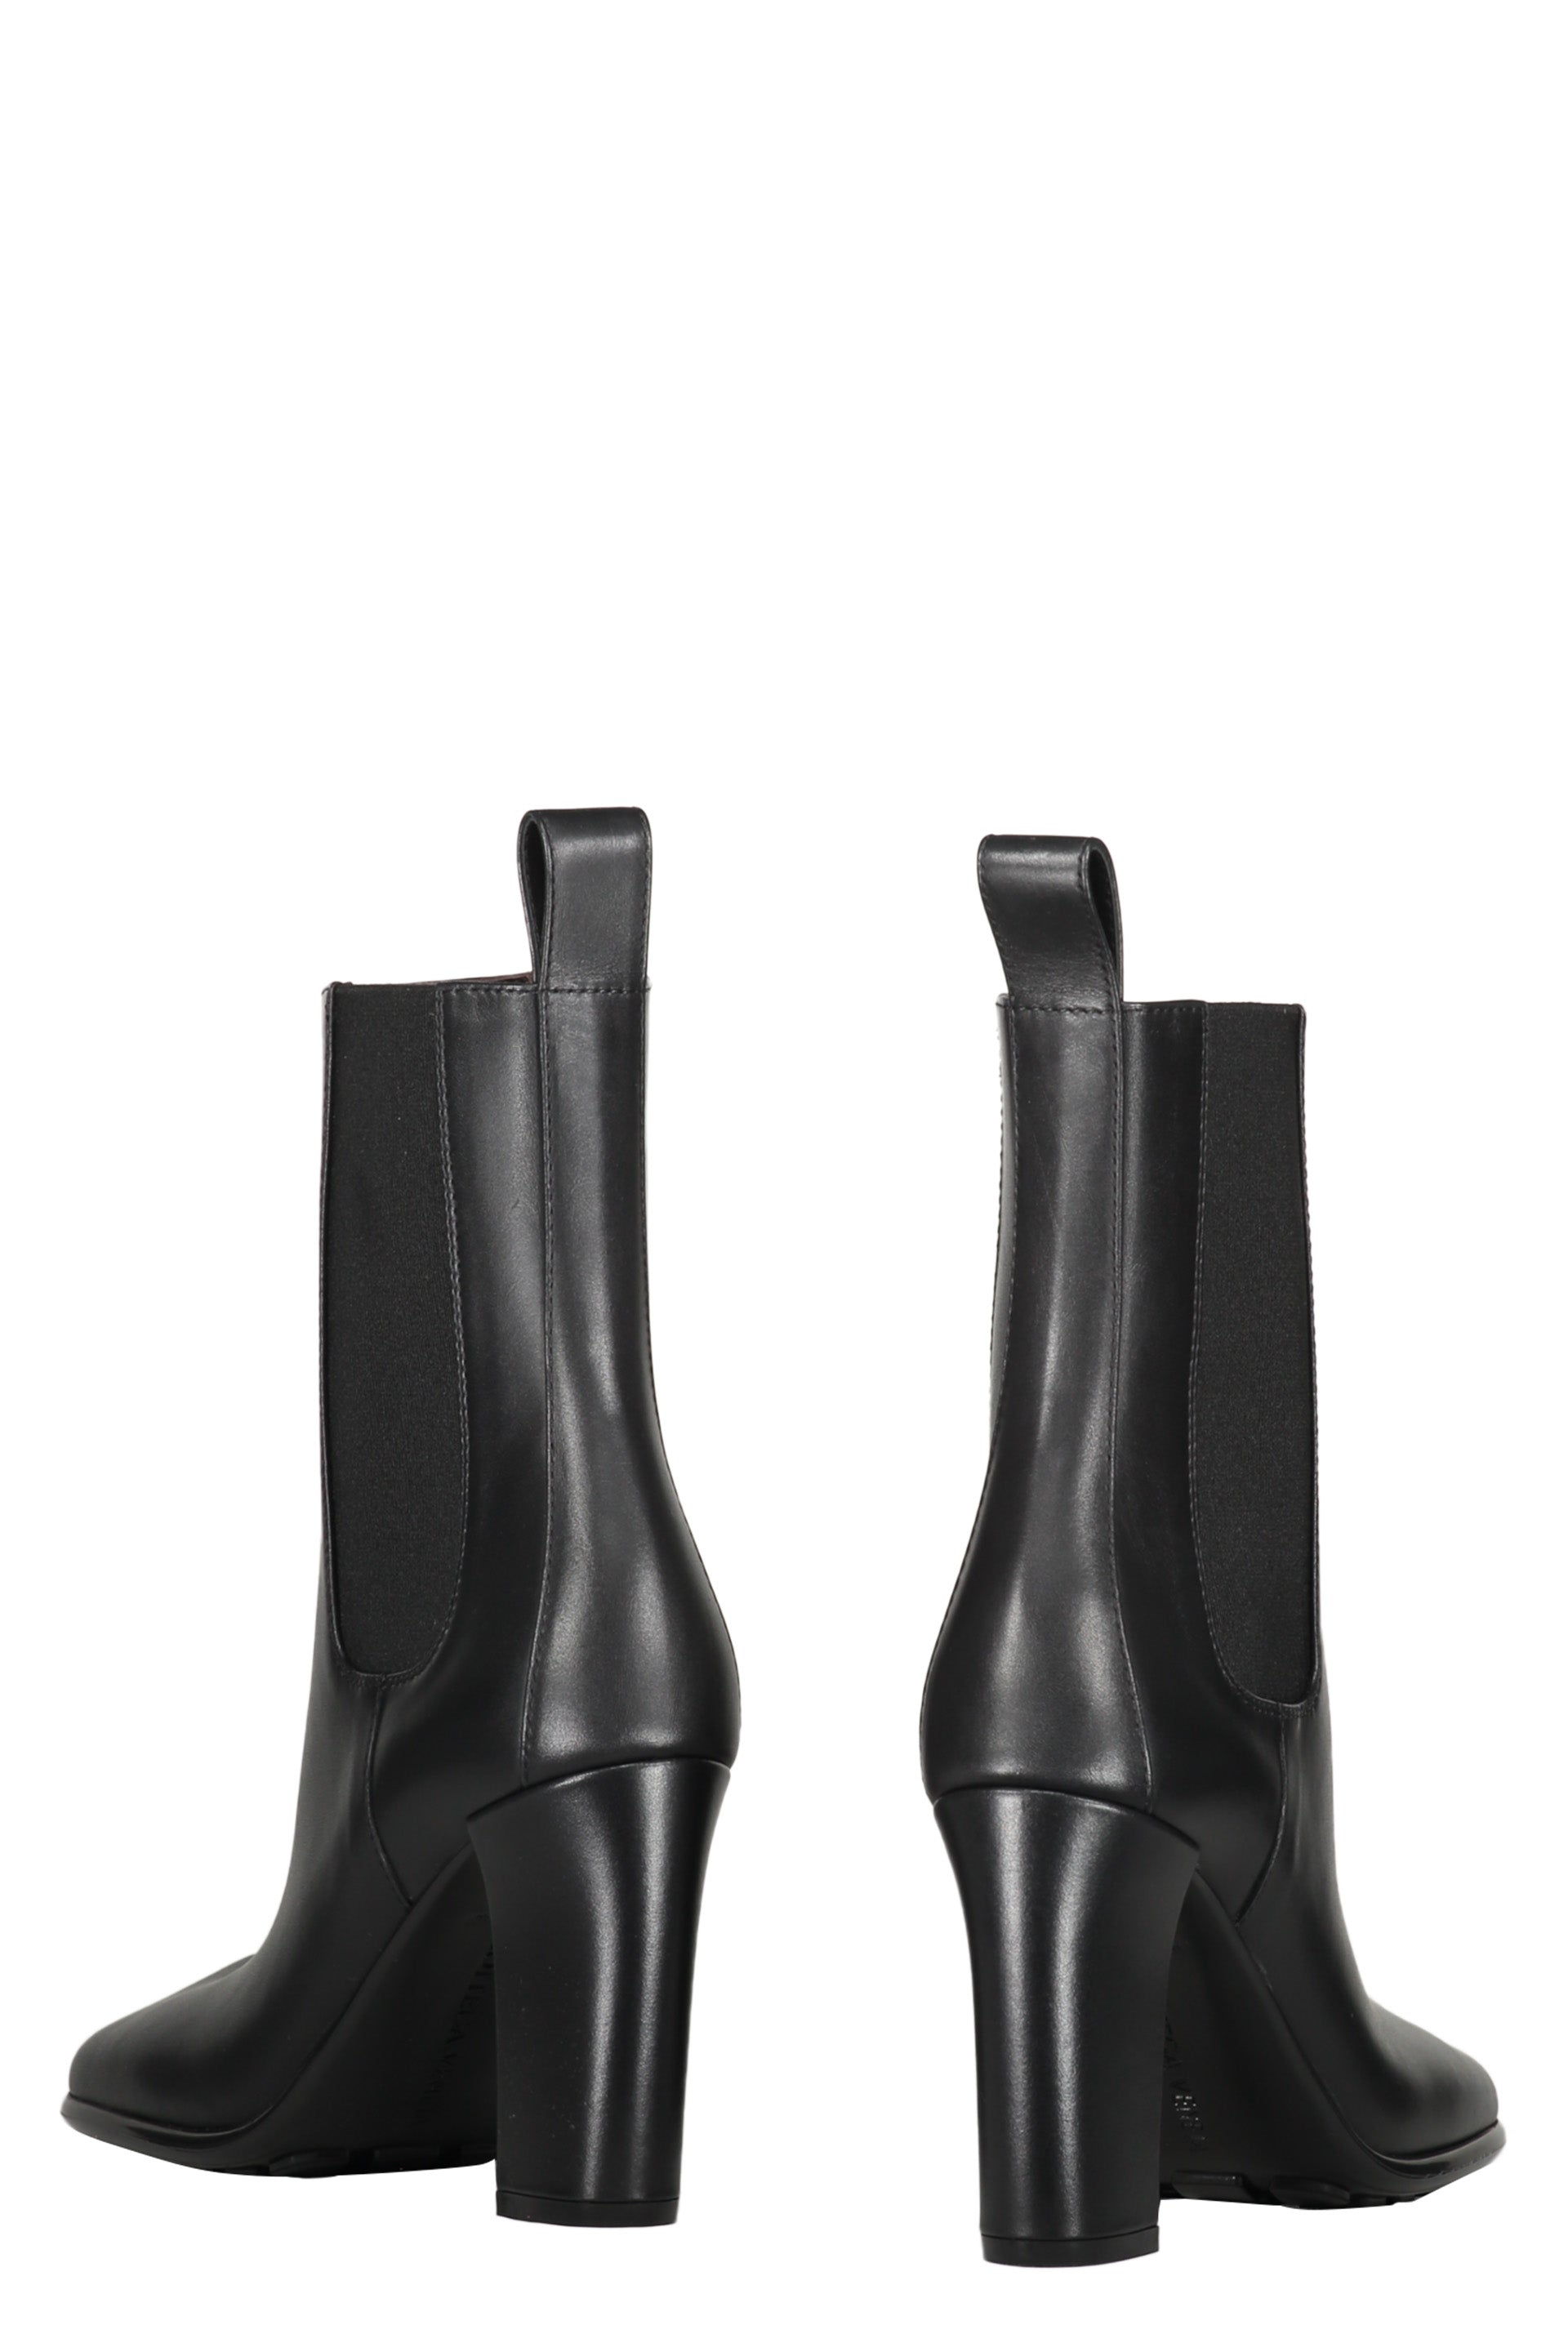 Storm Leather ankle boots-Bottega Veneta-OUTLET-SALE-ARCHIVIST